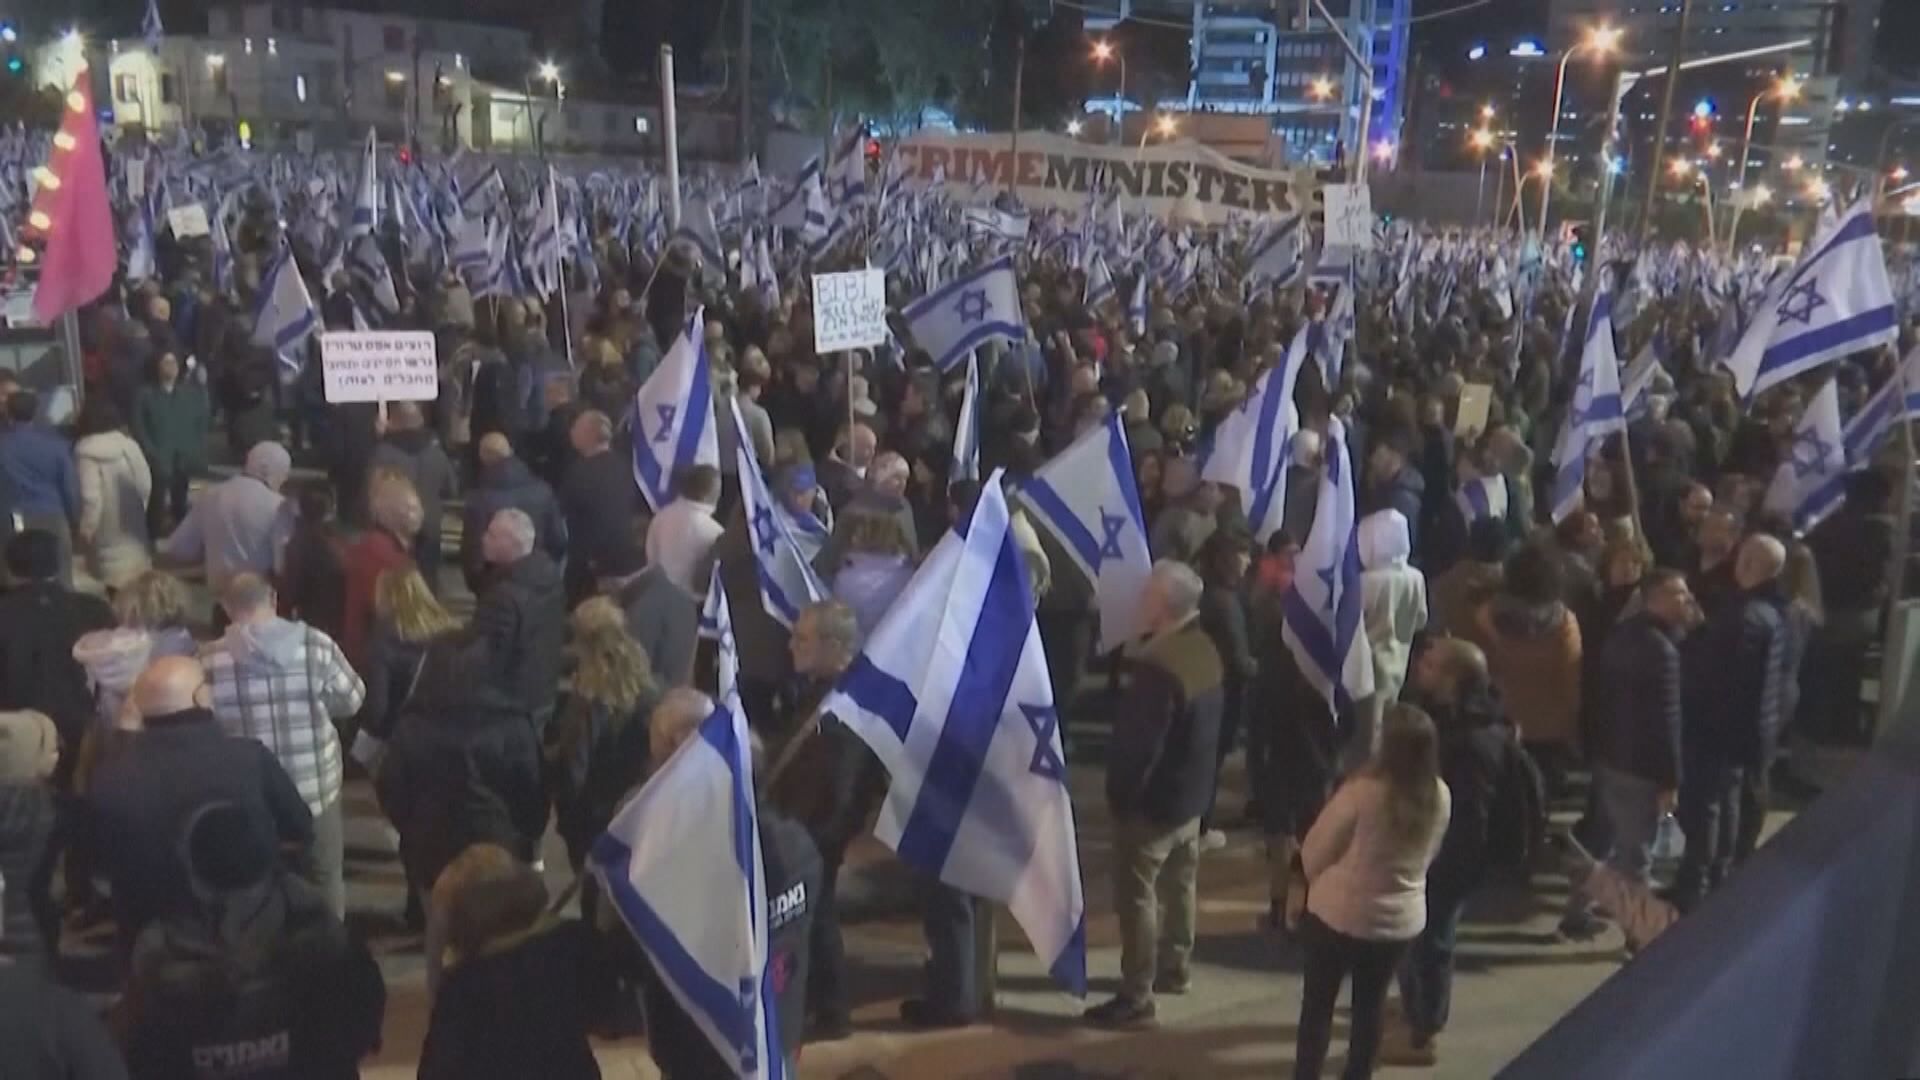 以色列連續第六個周末有示威反對司法改革